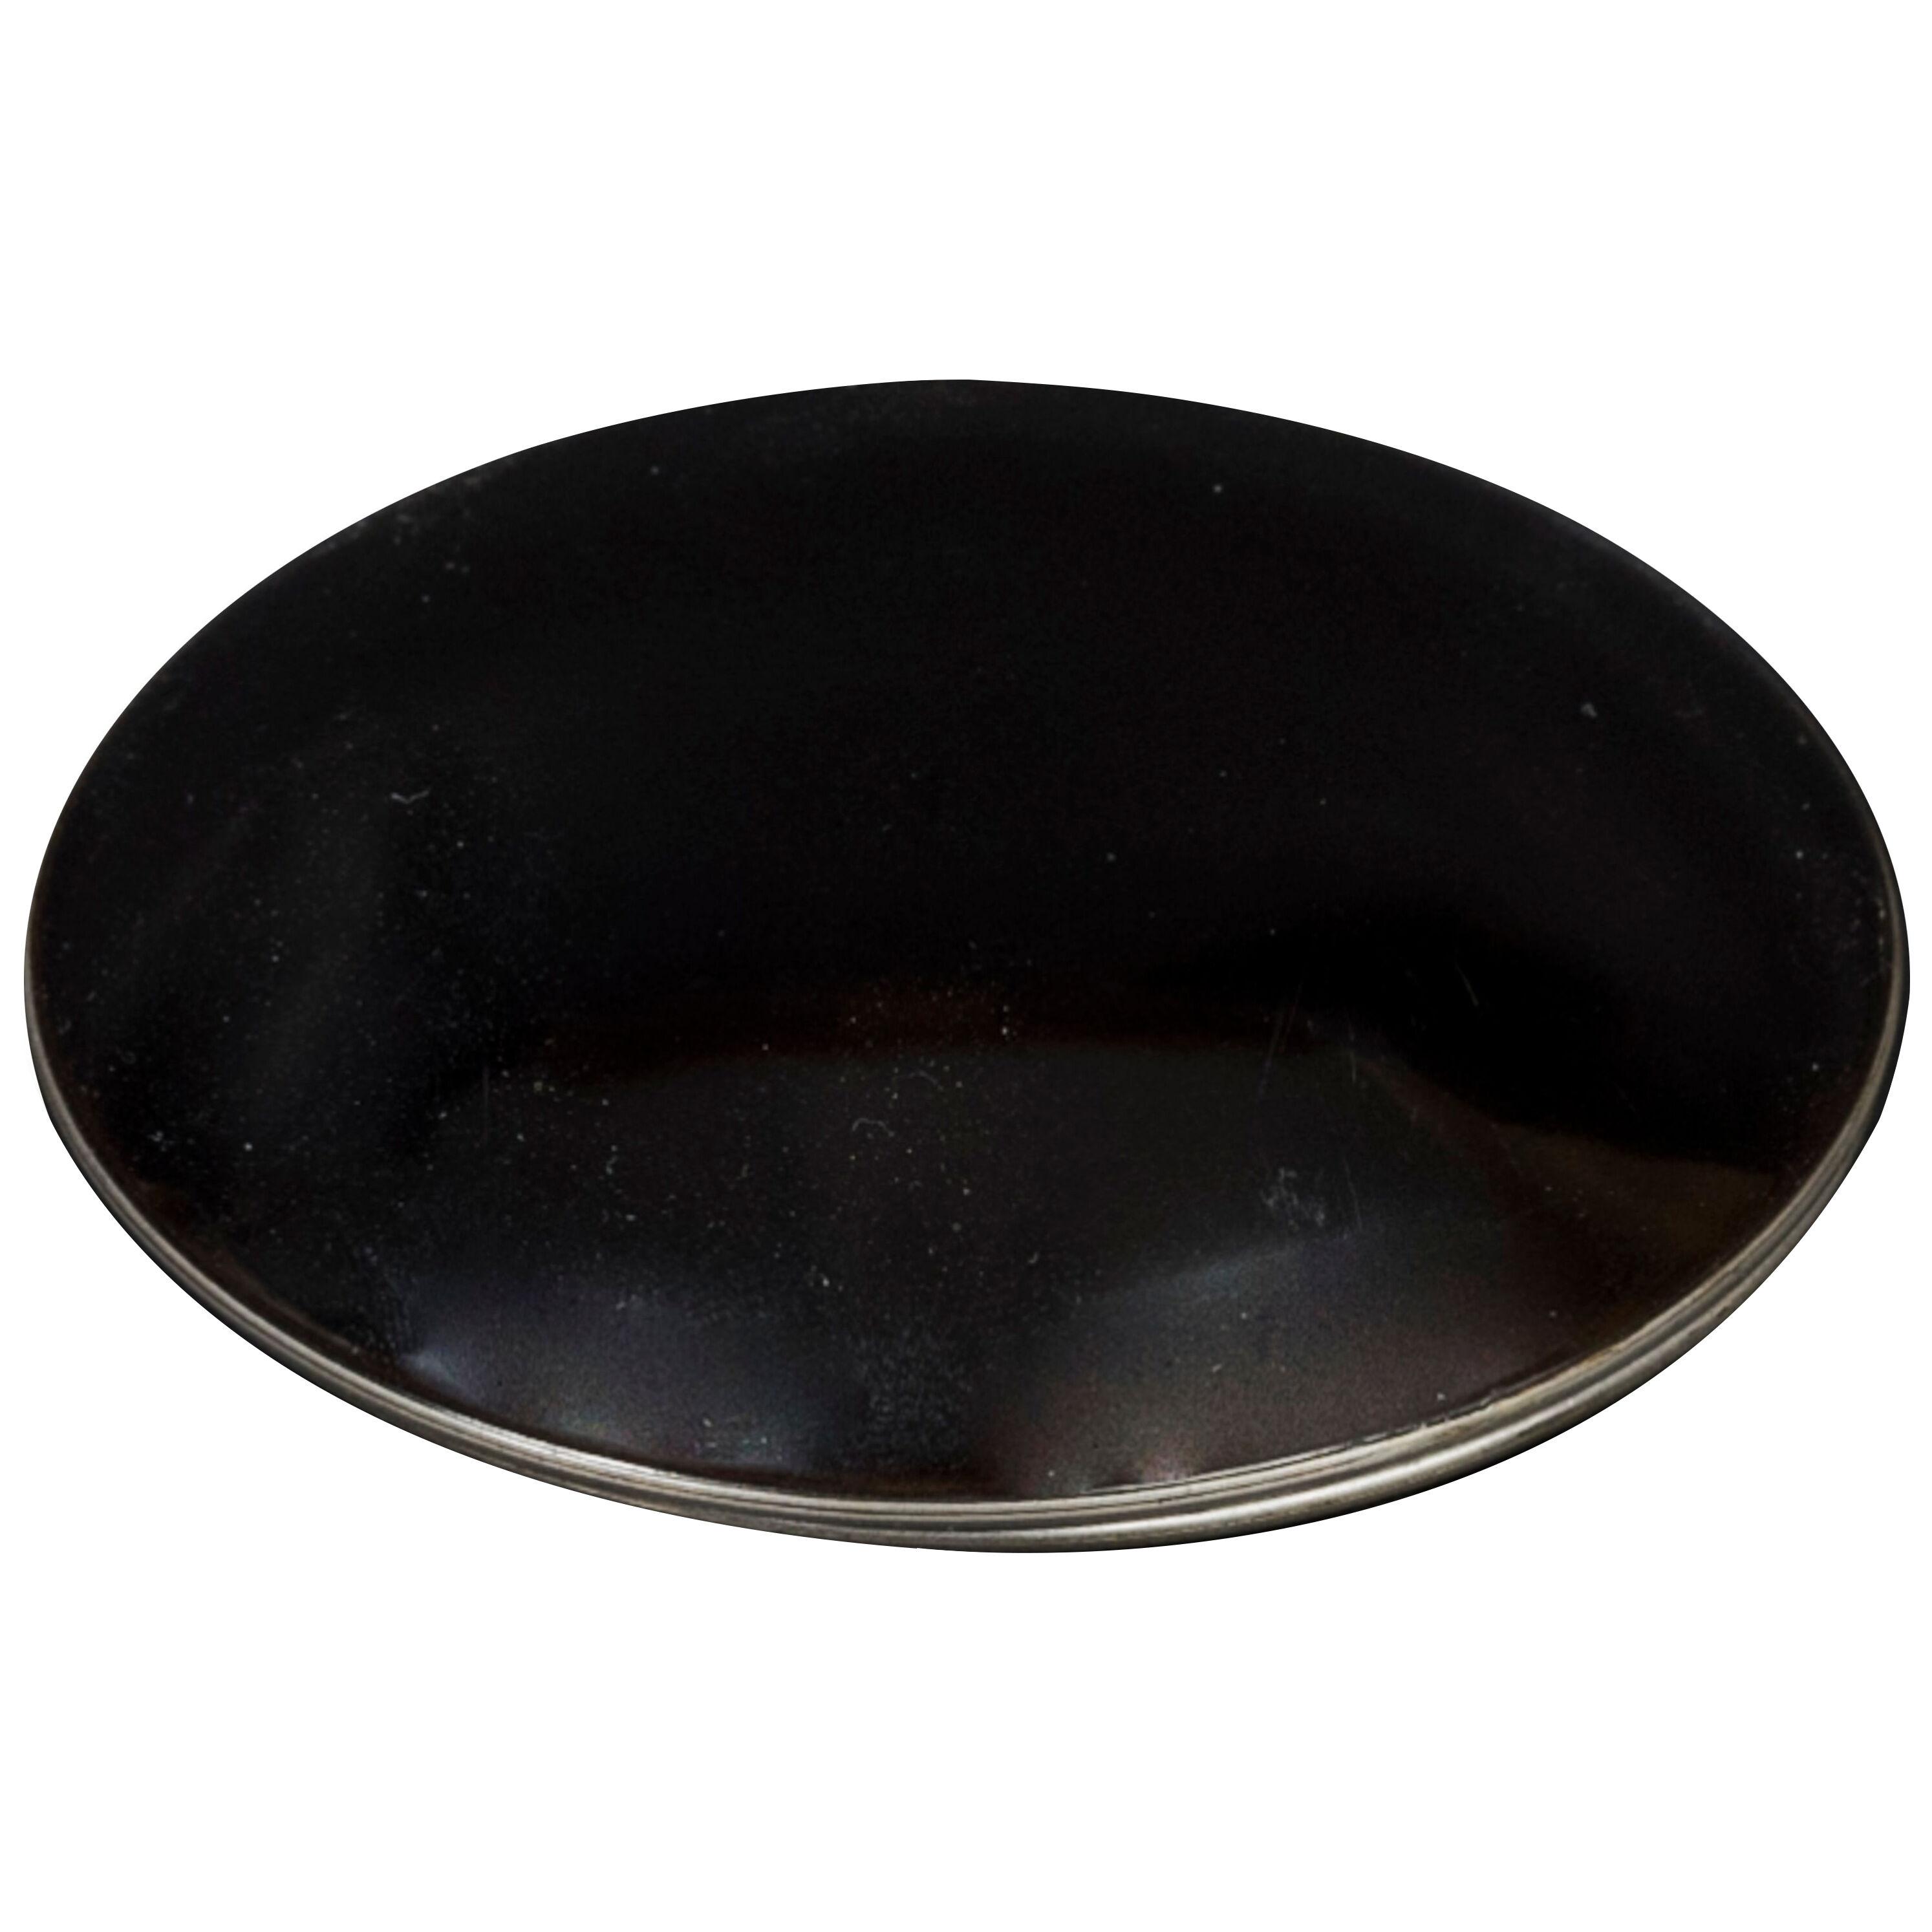 Lenticular Kobako in black lacquer